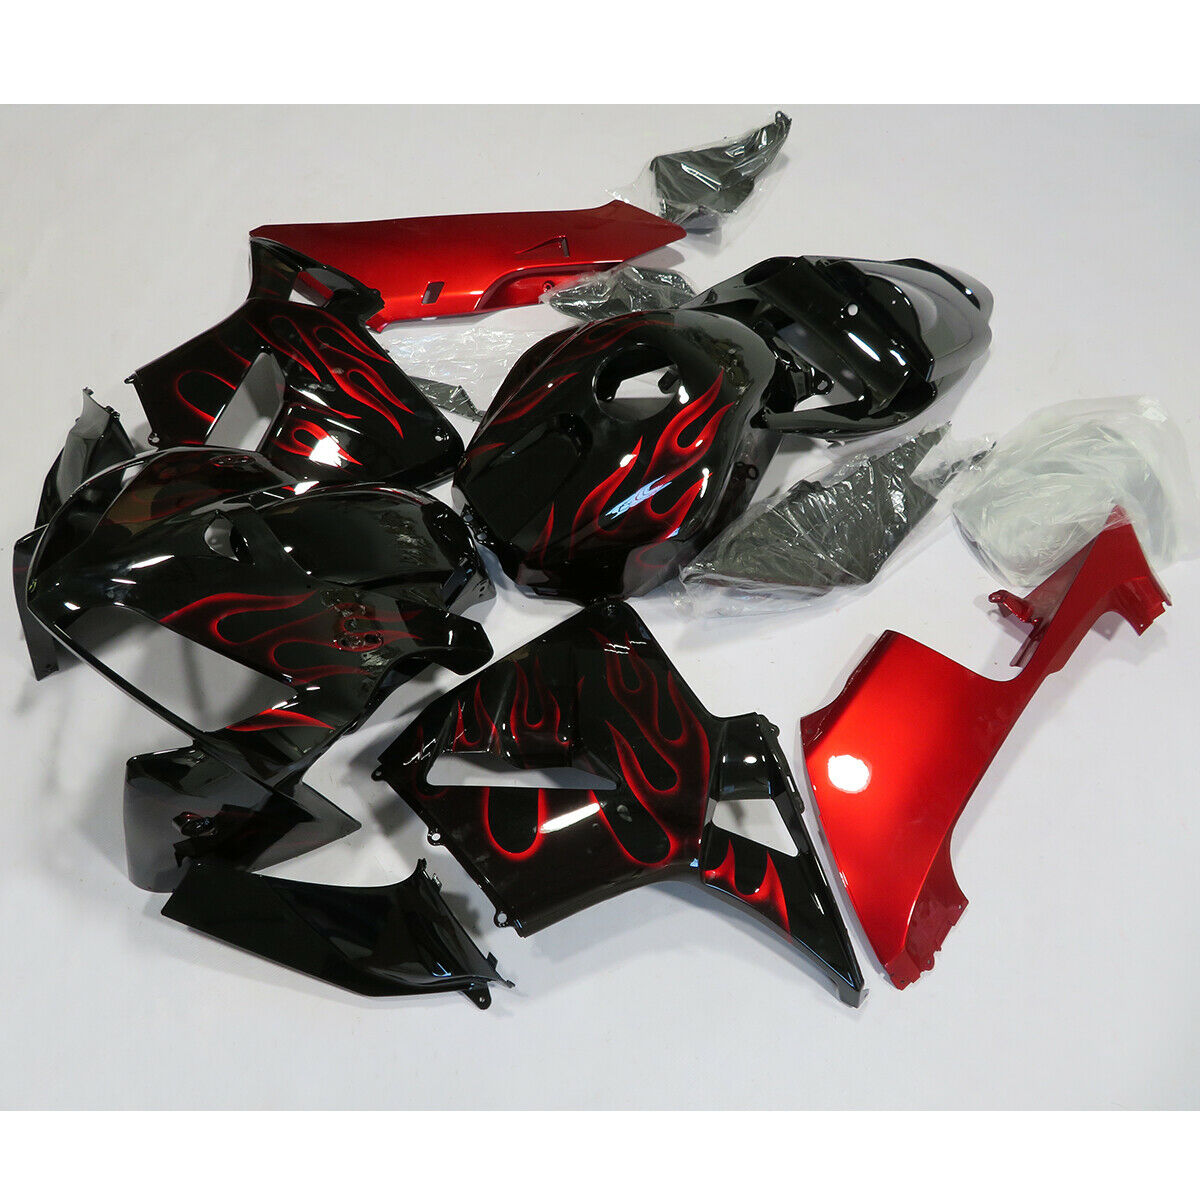 2005-2006 Honda CBR600RR Red Black Fairing Kit by Amotopart Fairings